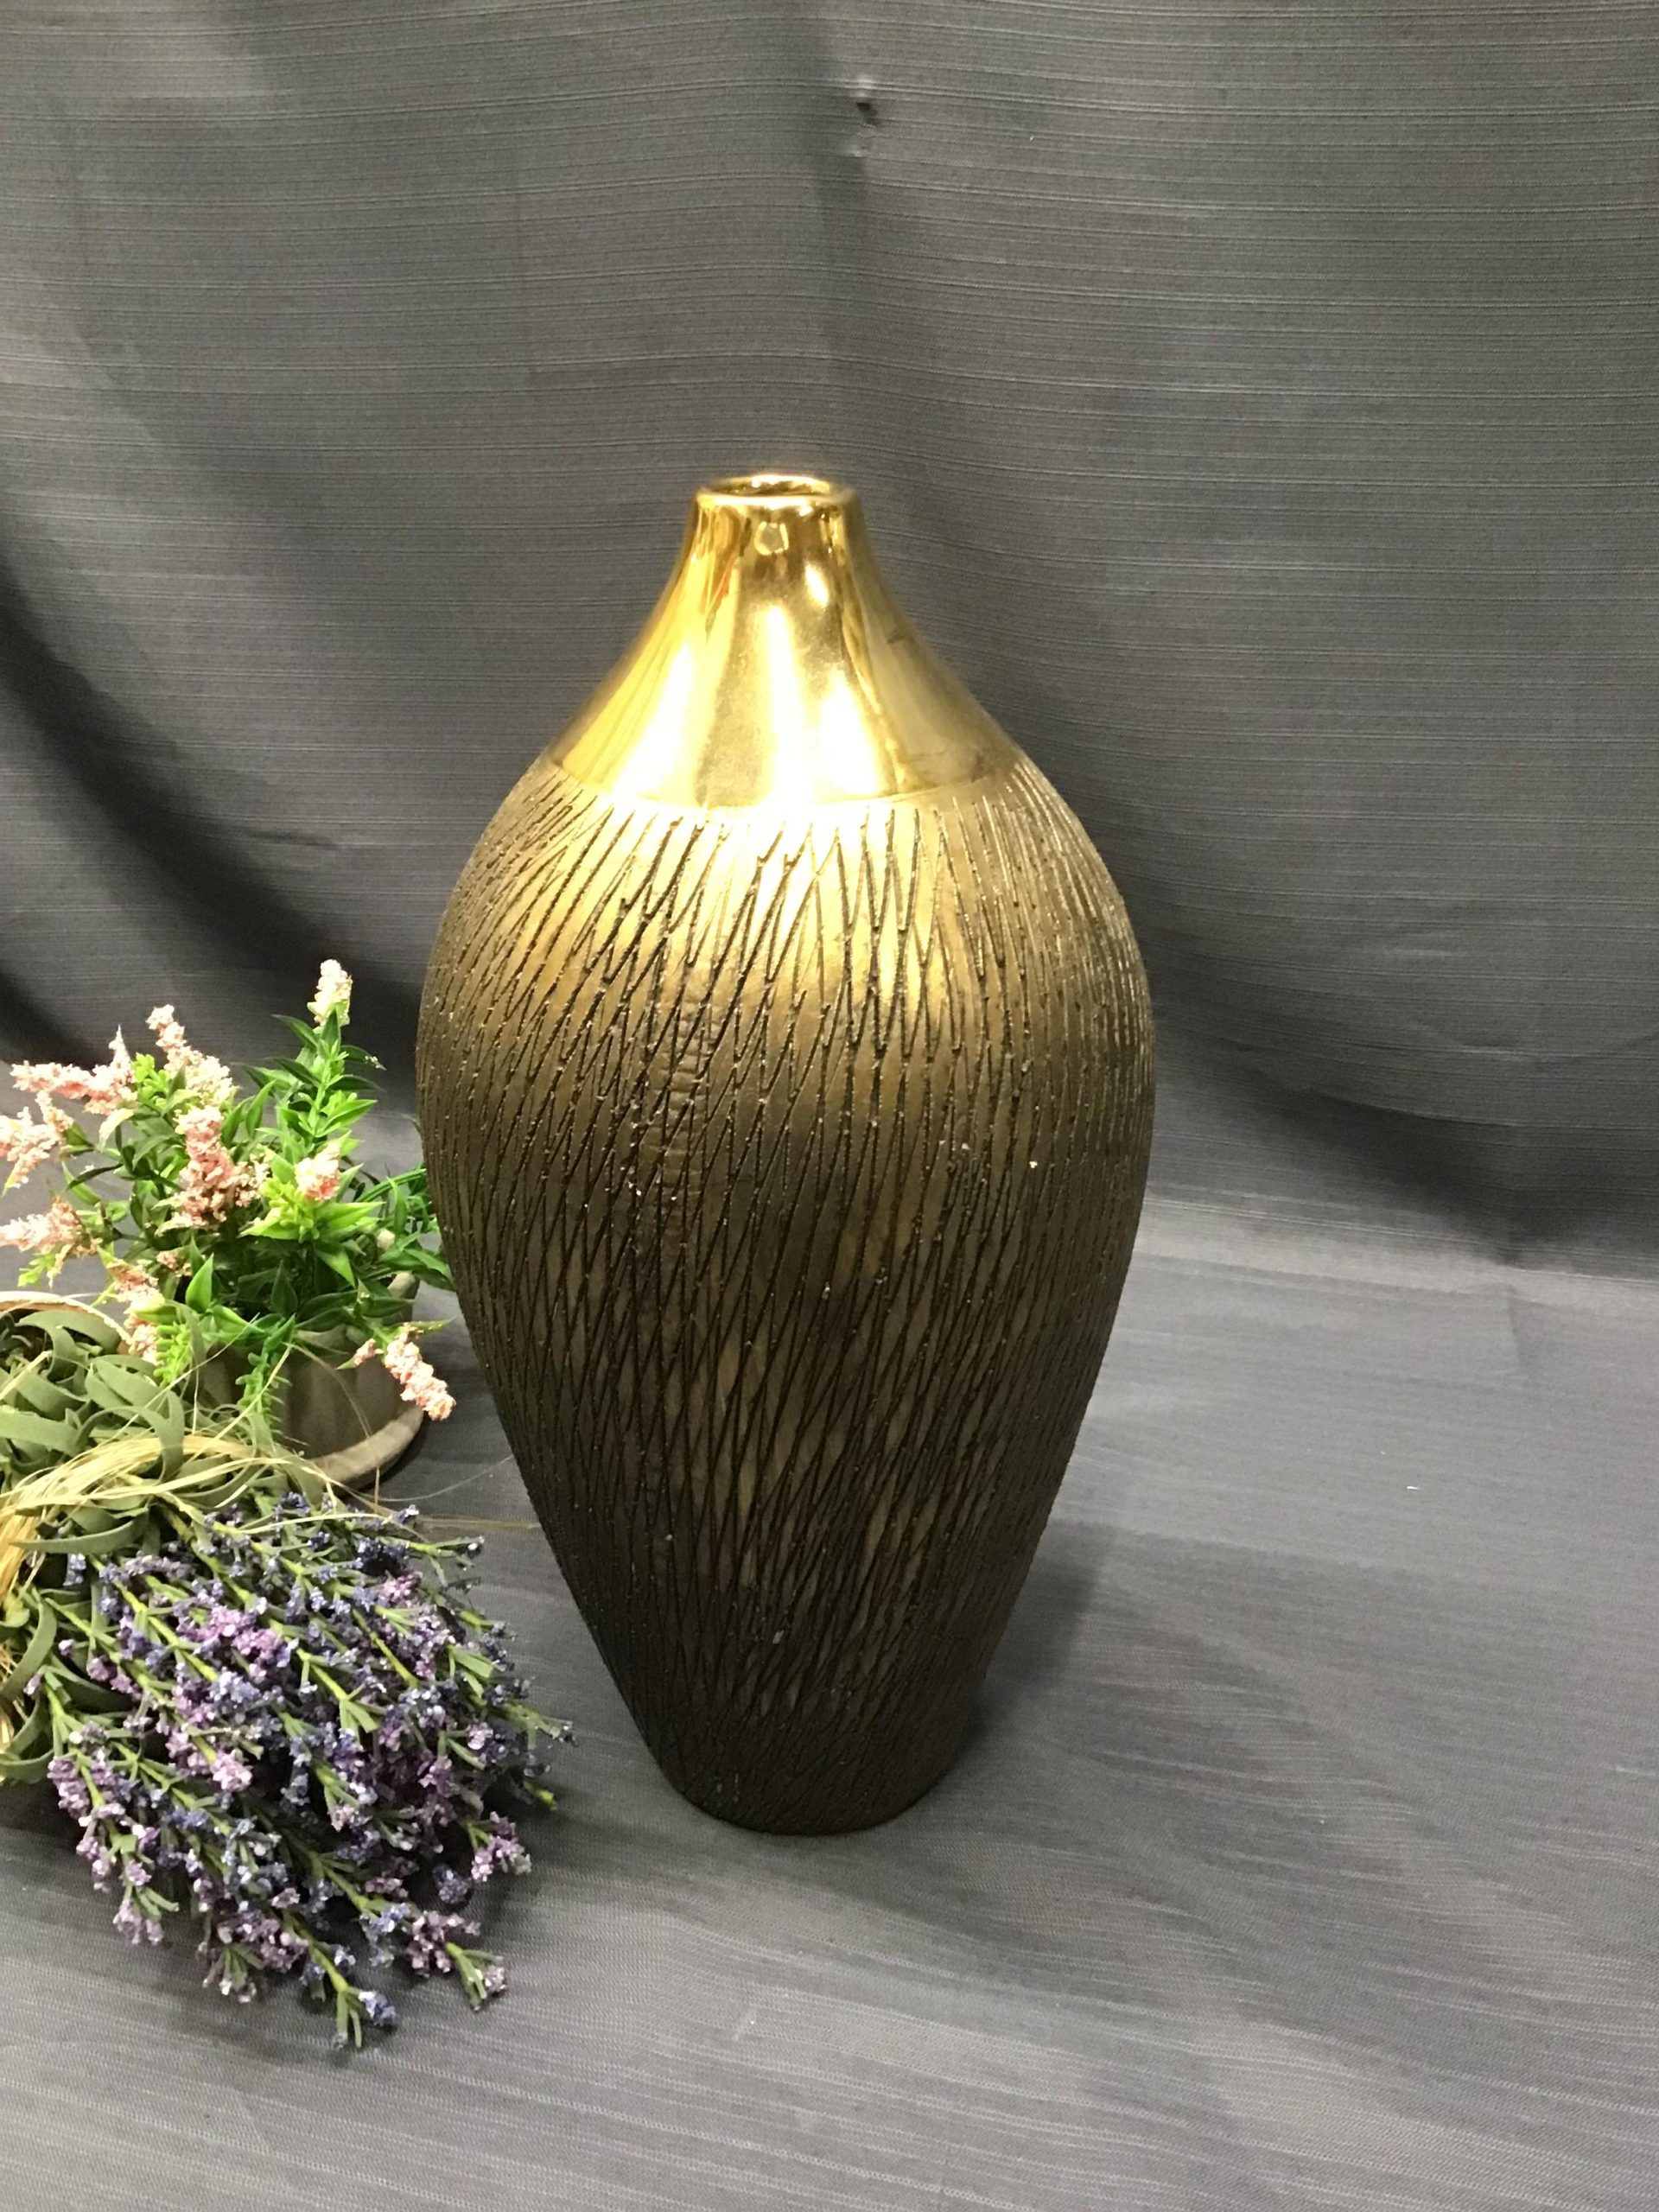 Etched Gold Vase